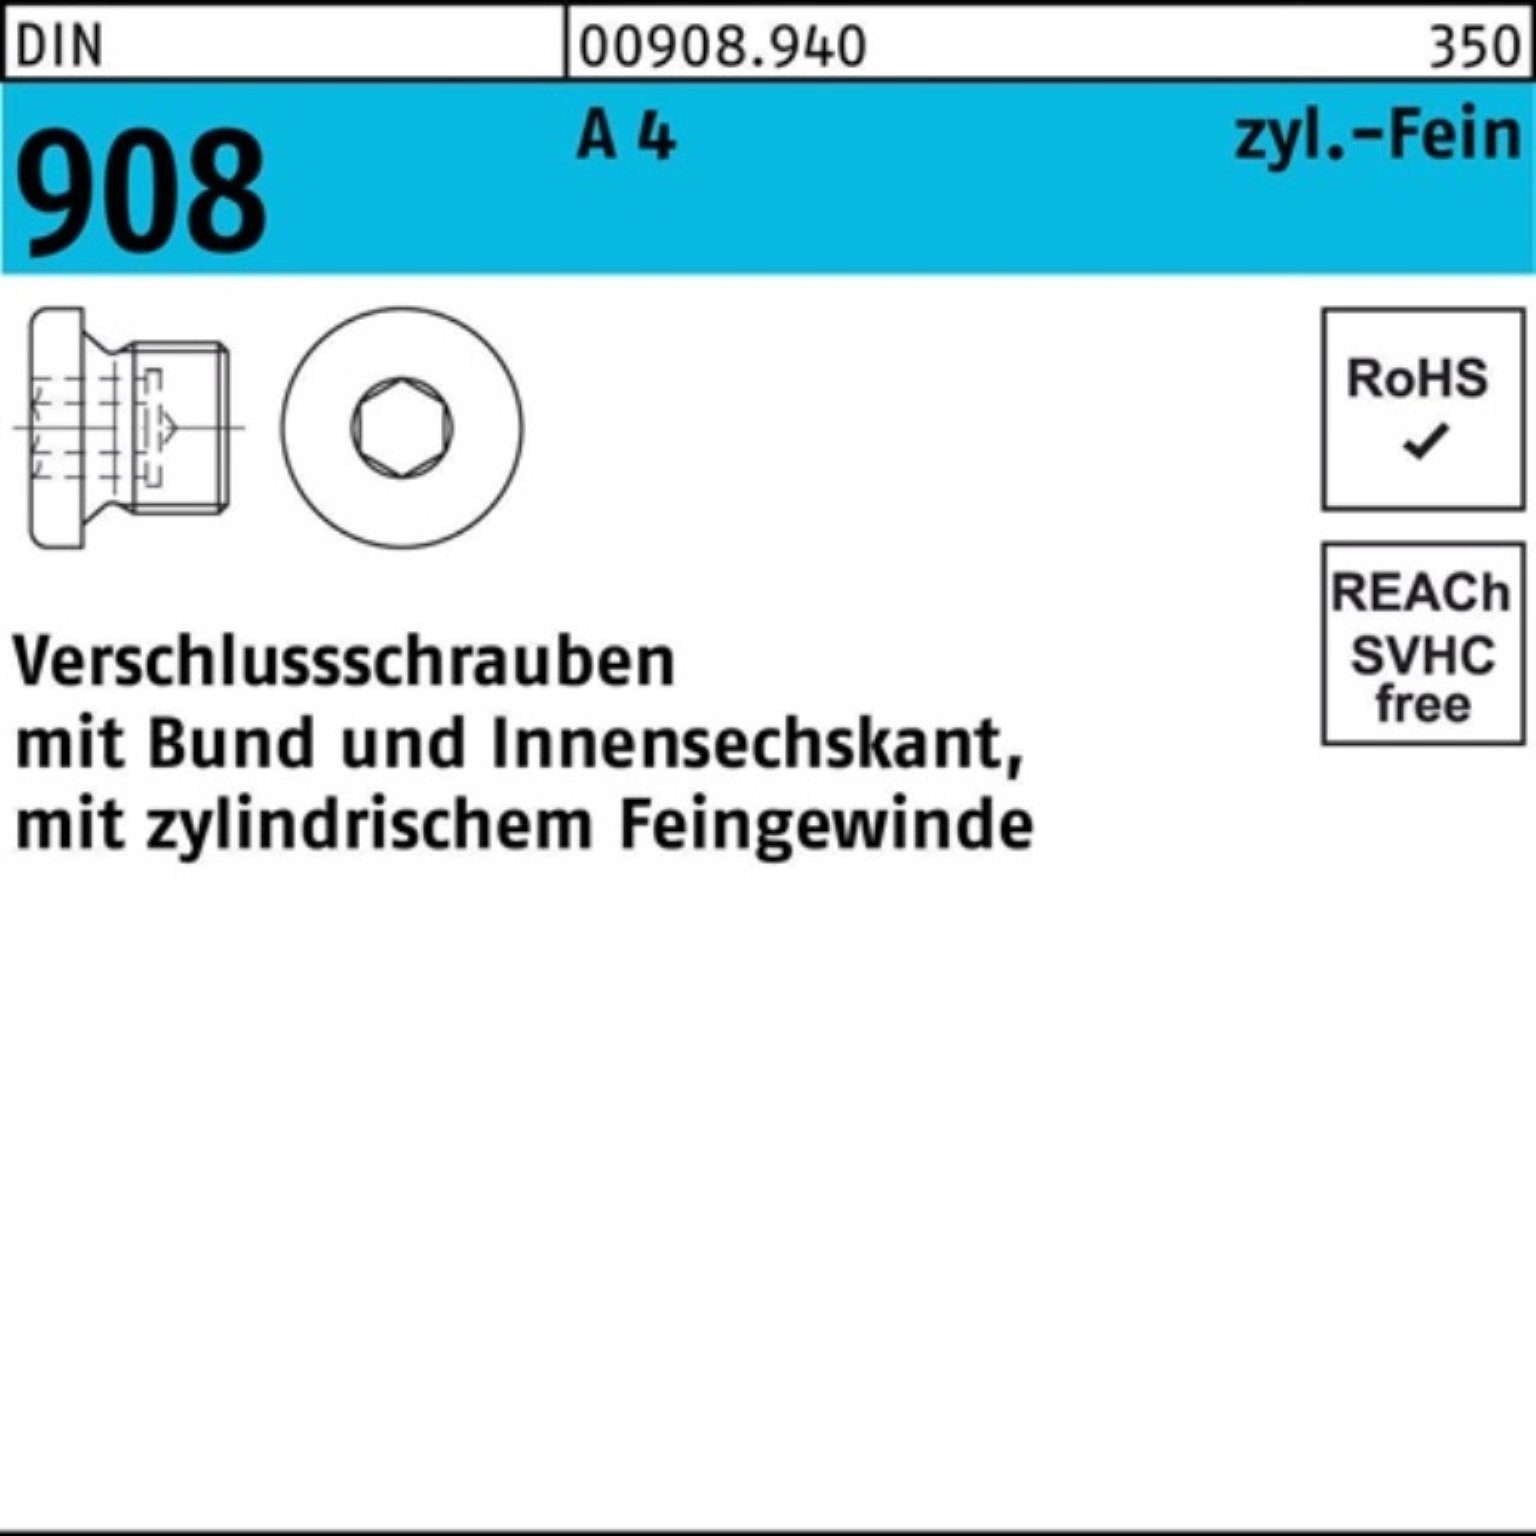 Reyher Schraube 100er Pack Verschlußschraube DIN 908 Bund/Innen-6kt M14x 1,5 A 4 100